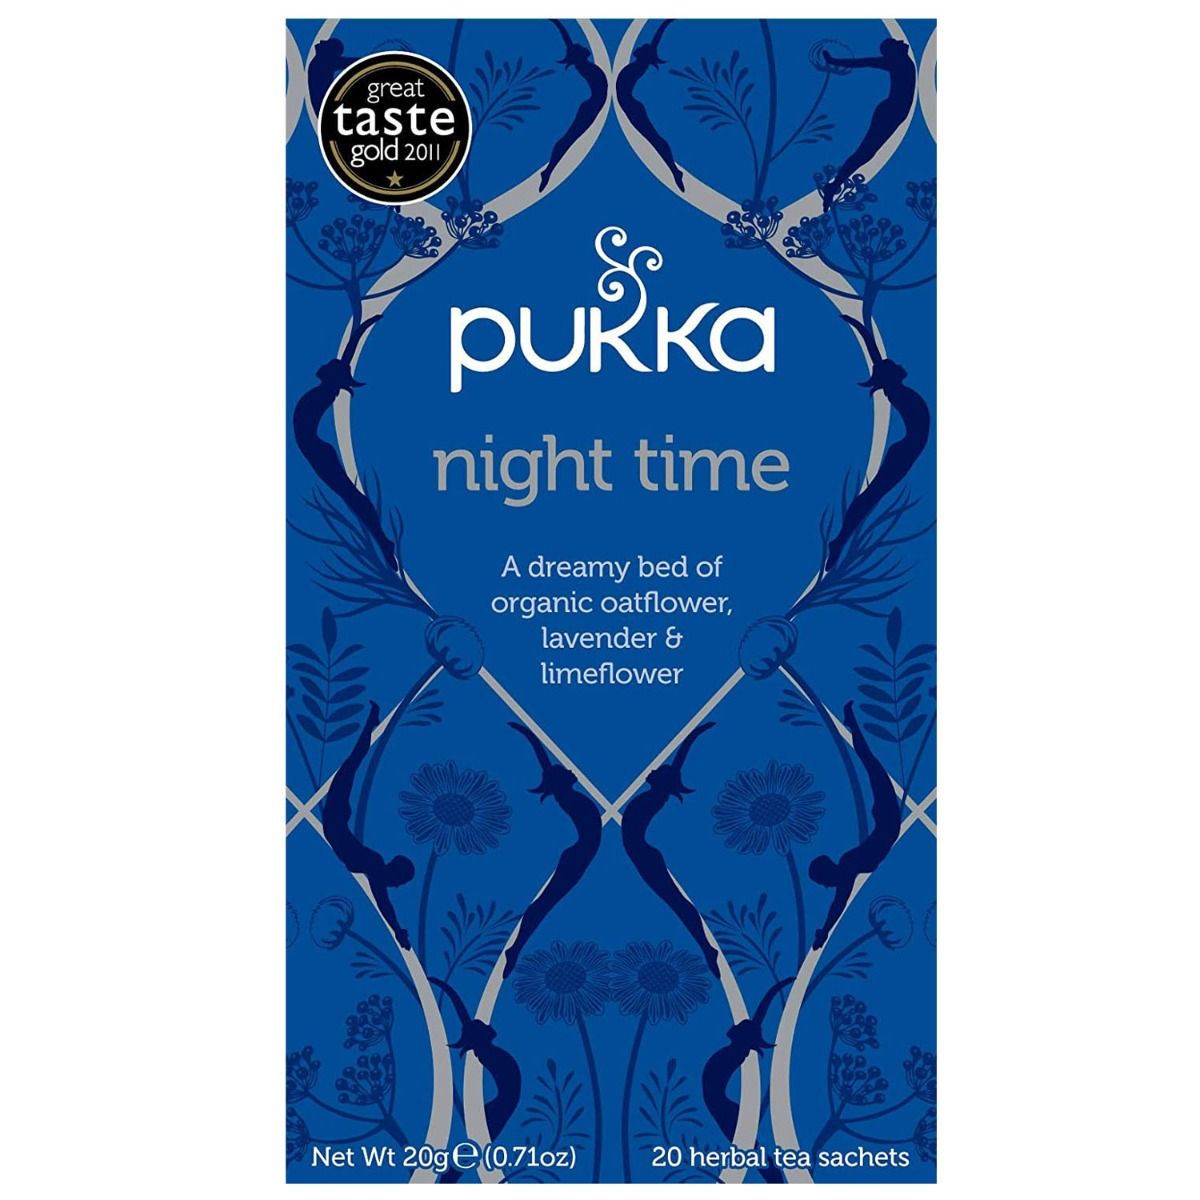 Buy Pukka Night Time Tea Bags, 20 Count Online